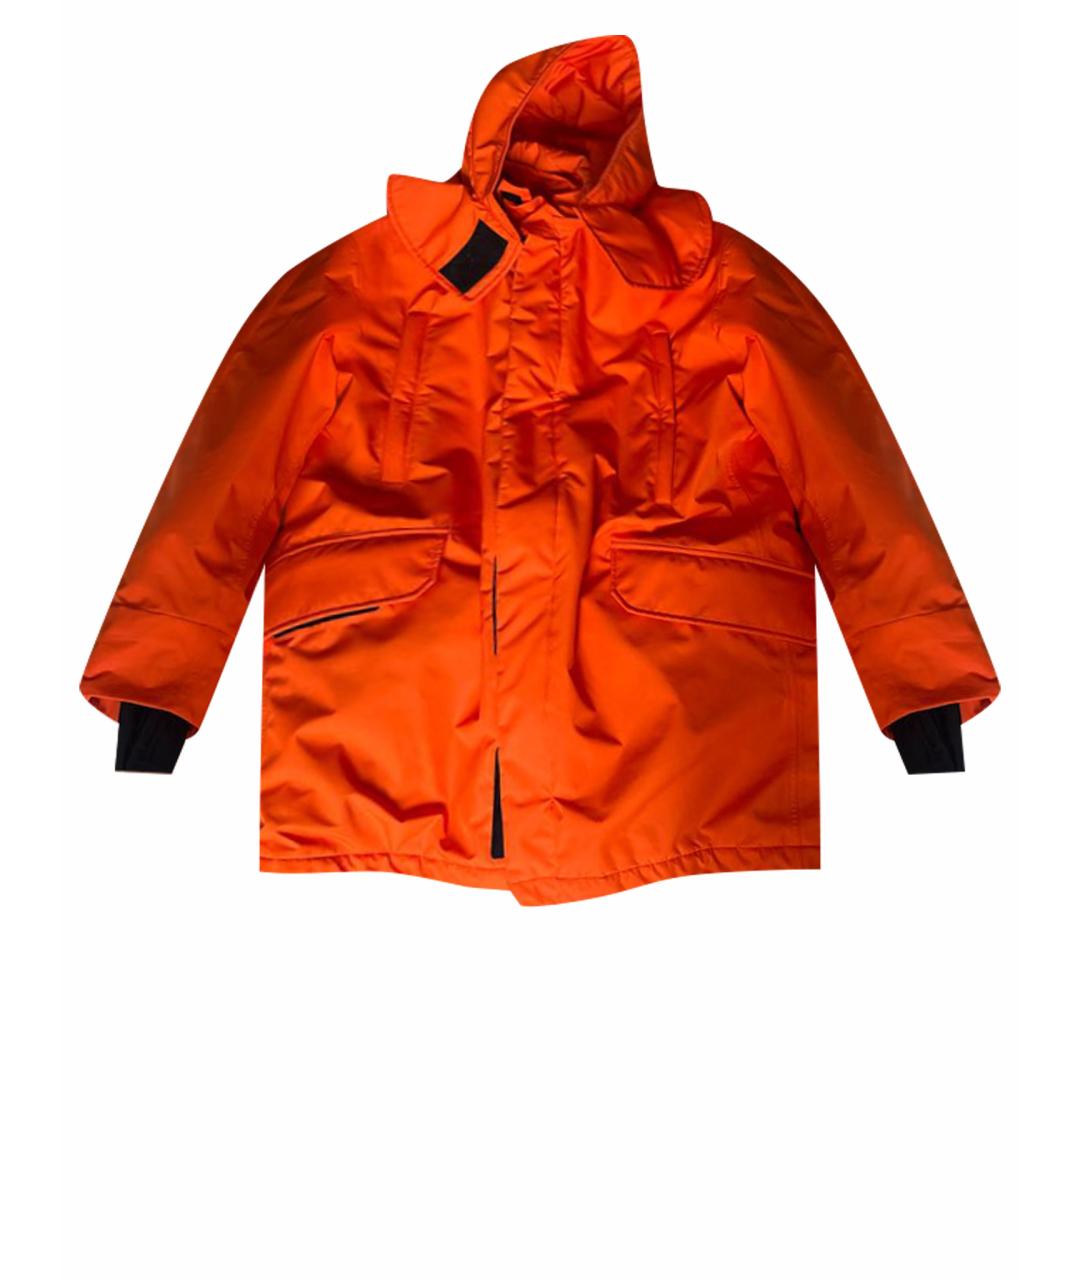 RAF SIMONS Оранжевая полиэстеровая куртка, фото 1